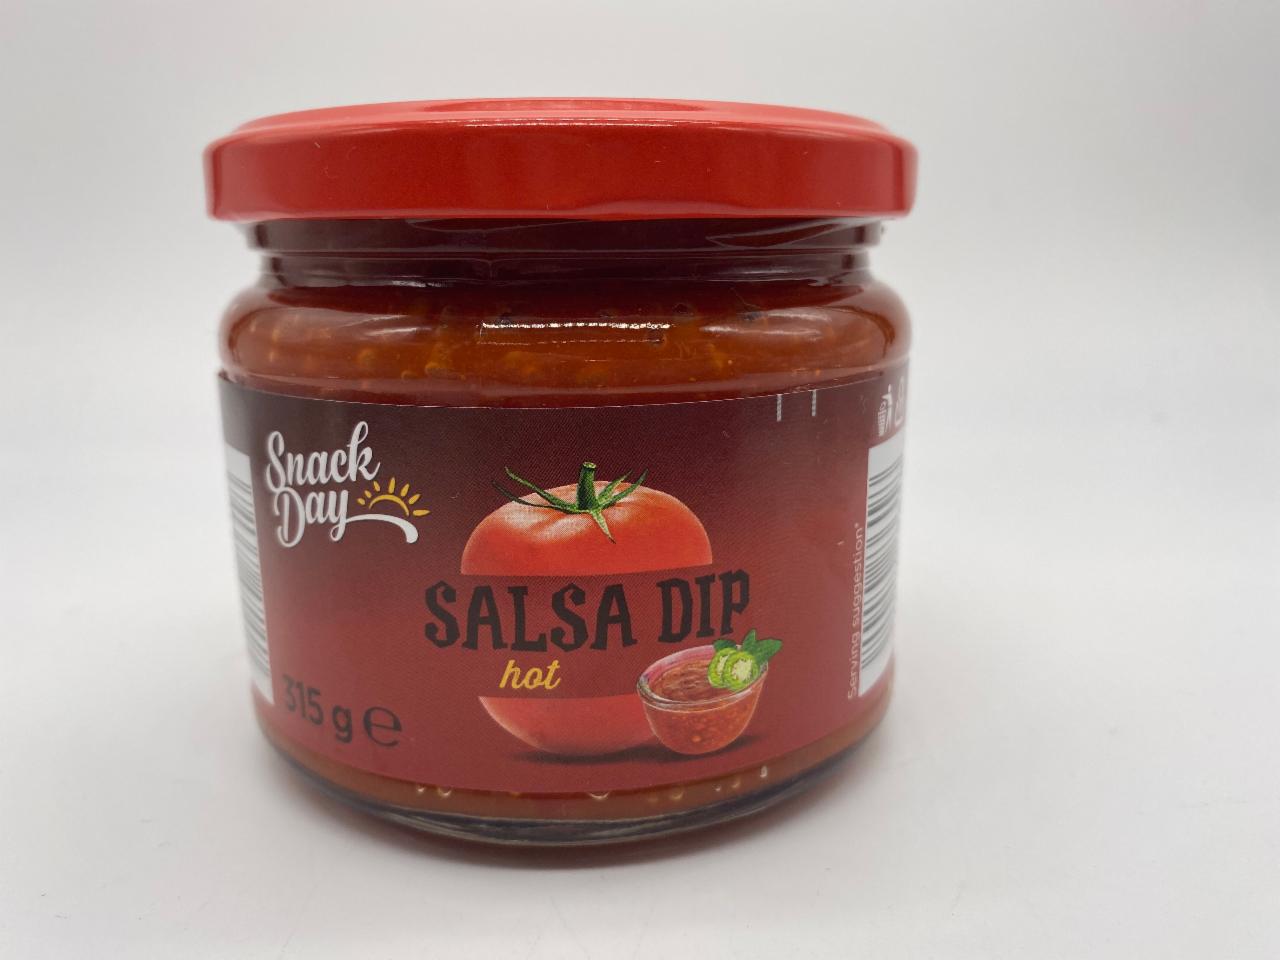 Фото - Соус помидорный в мексиканском стиле Batts Snack Day